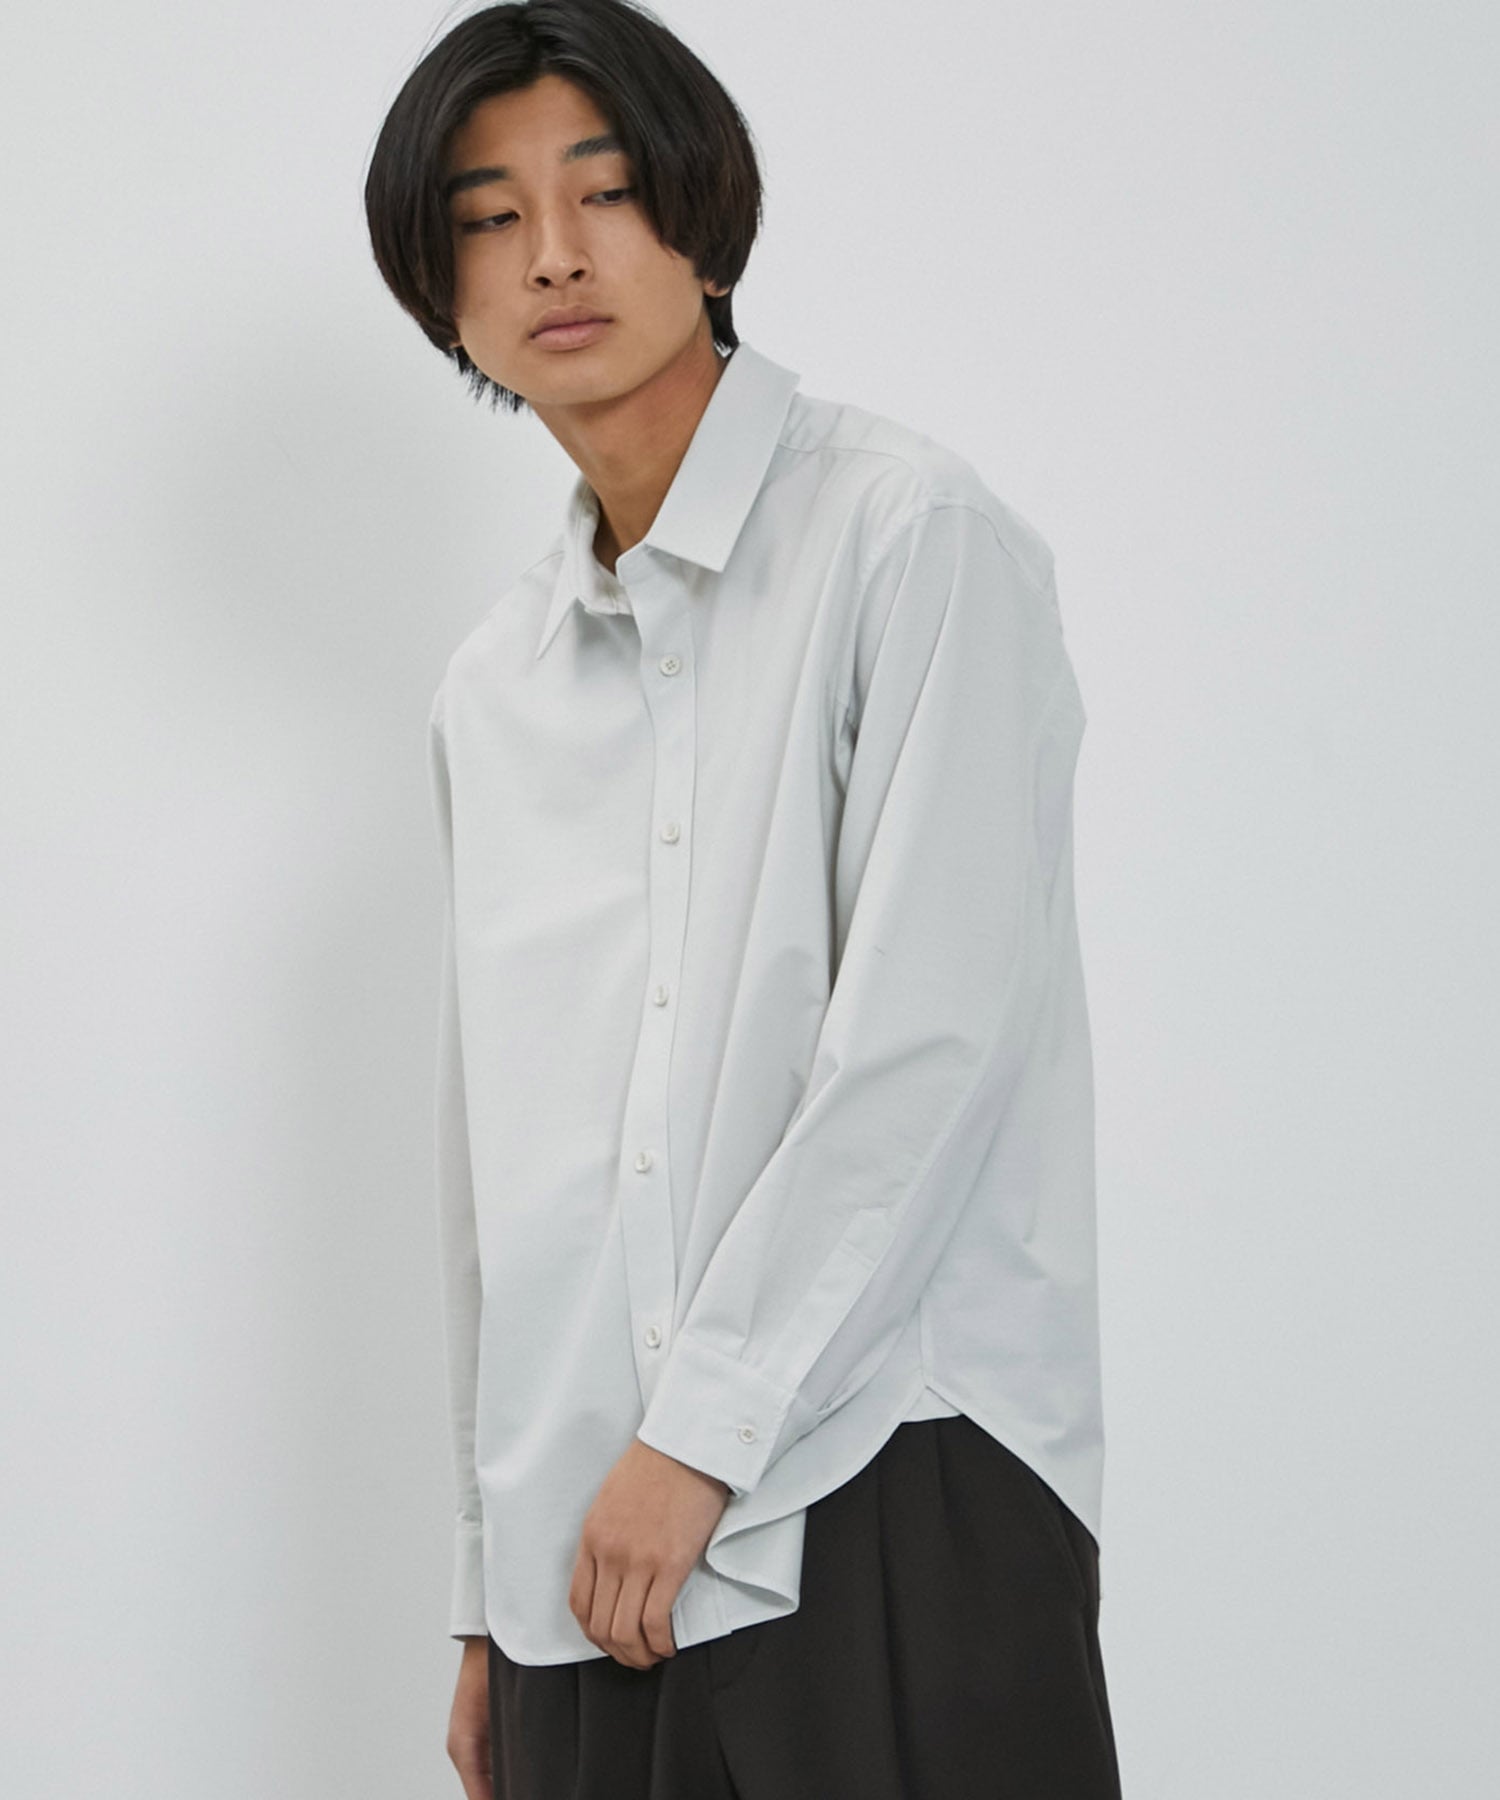 A+TOKYO シャツ・ブラウスの商品ページ